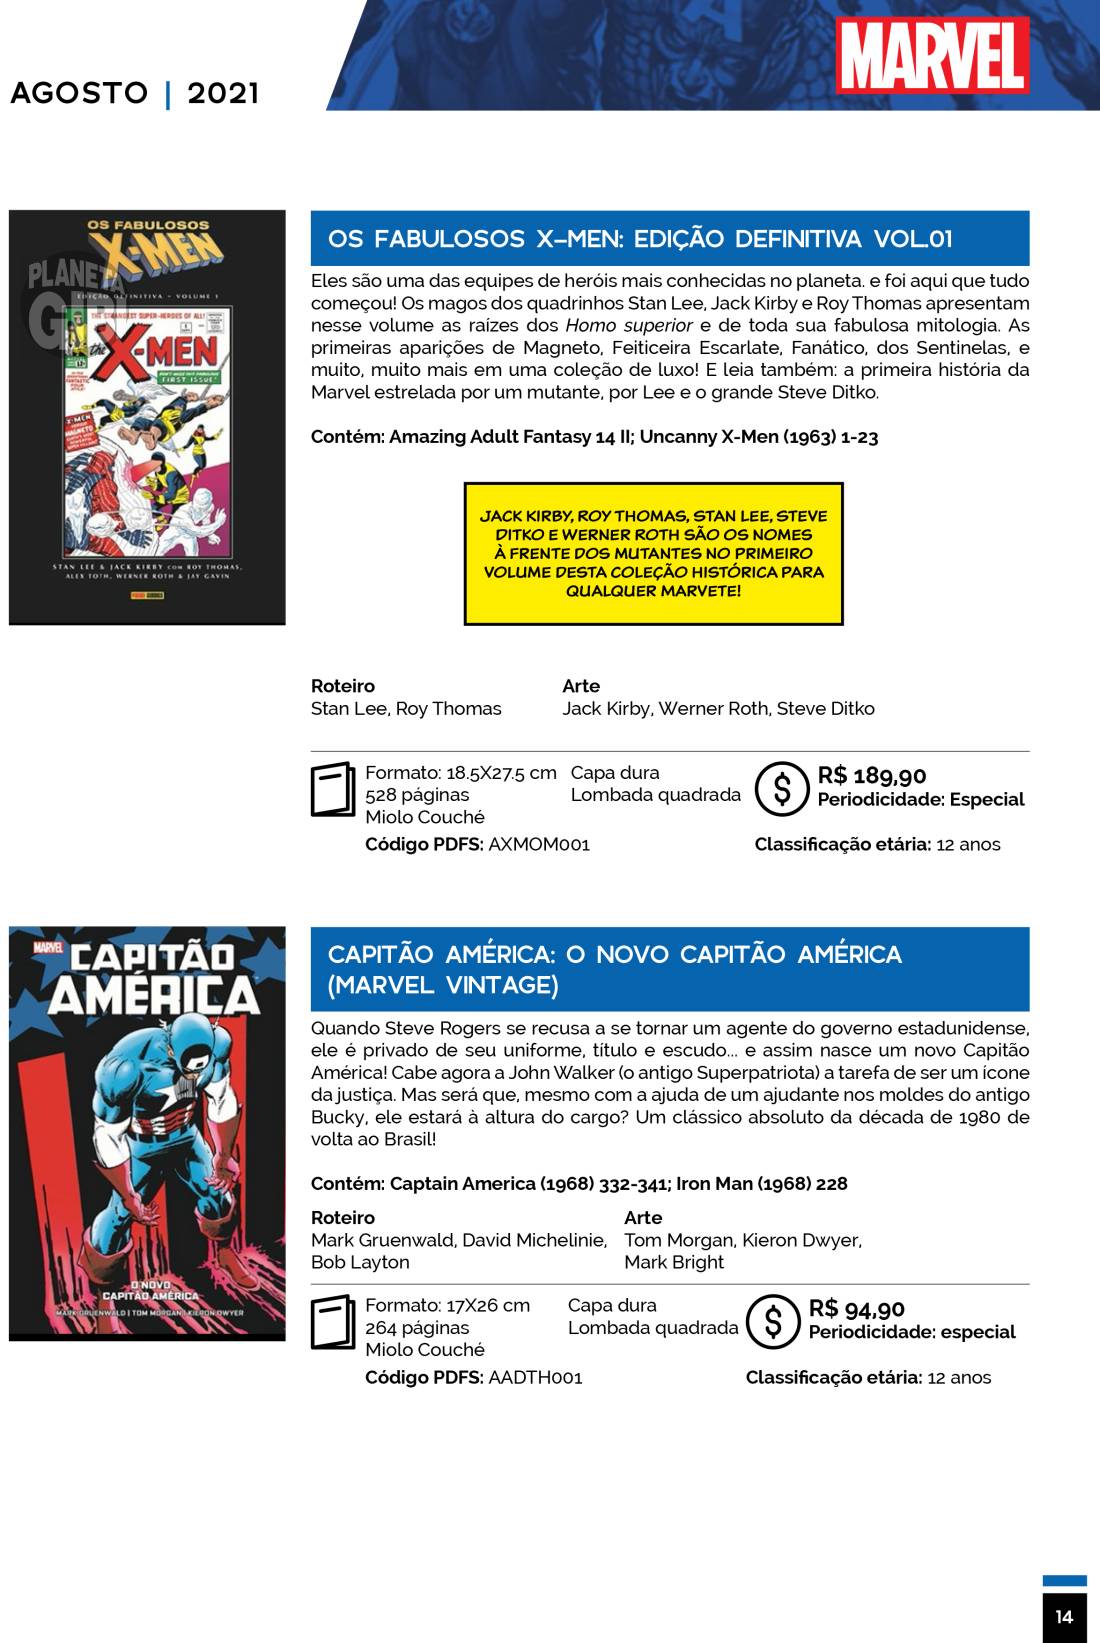 6 - Checklist Marvel/Panini (Julho/2020 - pág.09) - Página 9 Catalogo-Julho-Agosto-14